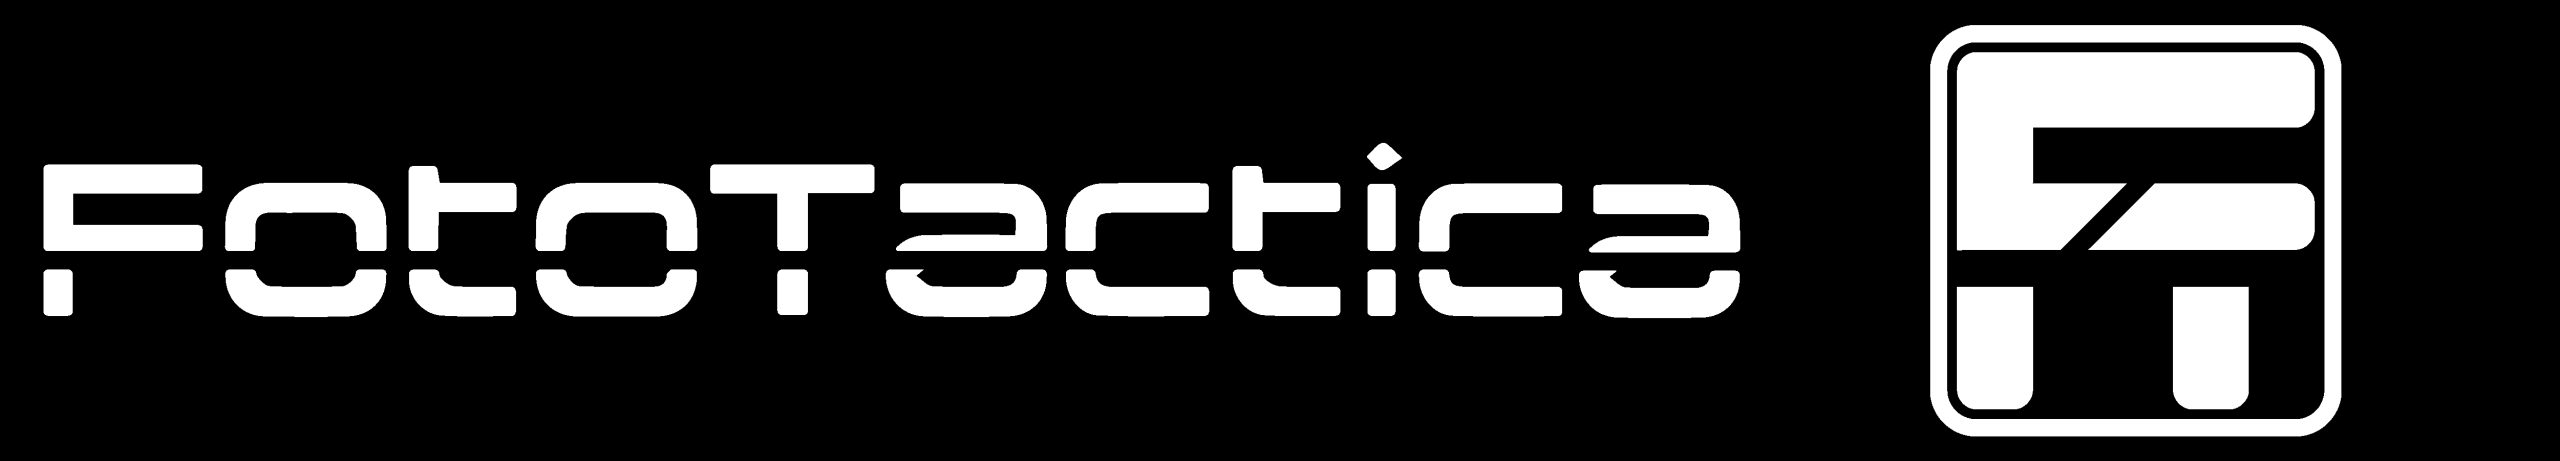 logotipo de fototactica con letras y logo en blanco